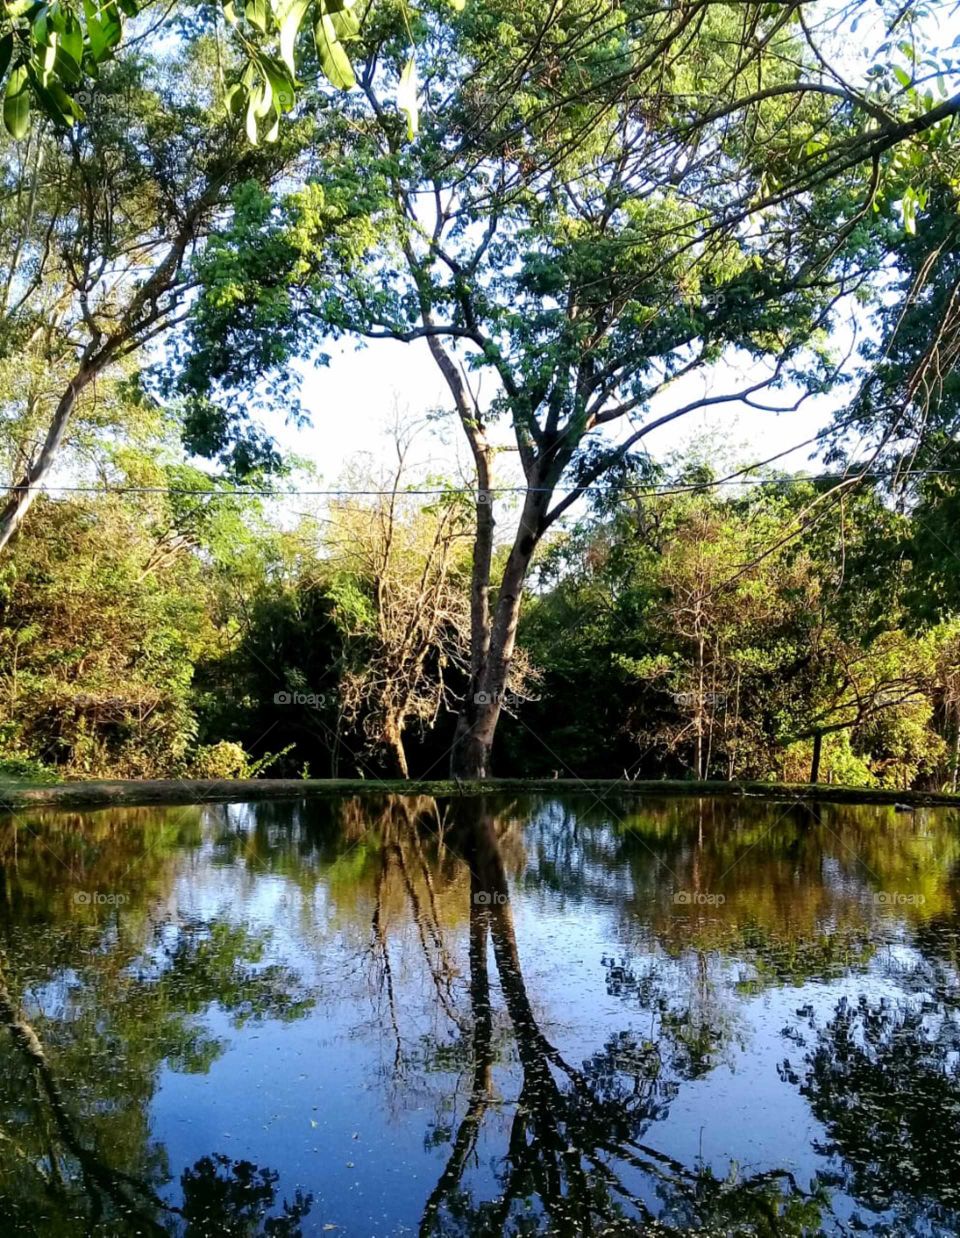 🇧🇷 O reflexo das árvores no lago, em meio à beleza da natureza (cidade de Mogi-Mirim, SP, Brasil) / 🇺🇸 The reflection of trees in the lake, amidst the beauty of nature (Mogi-Mirim, SP, Brazil) 